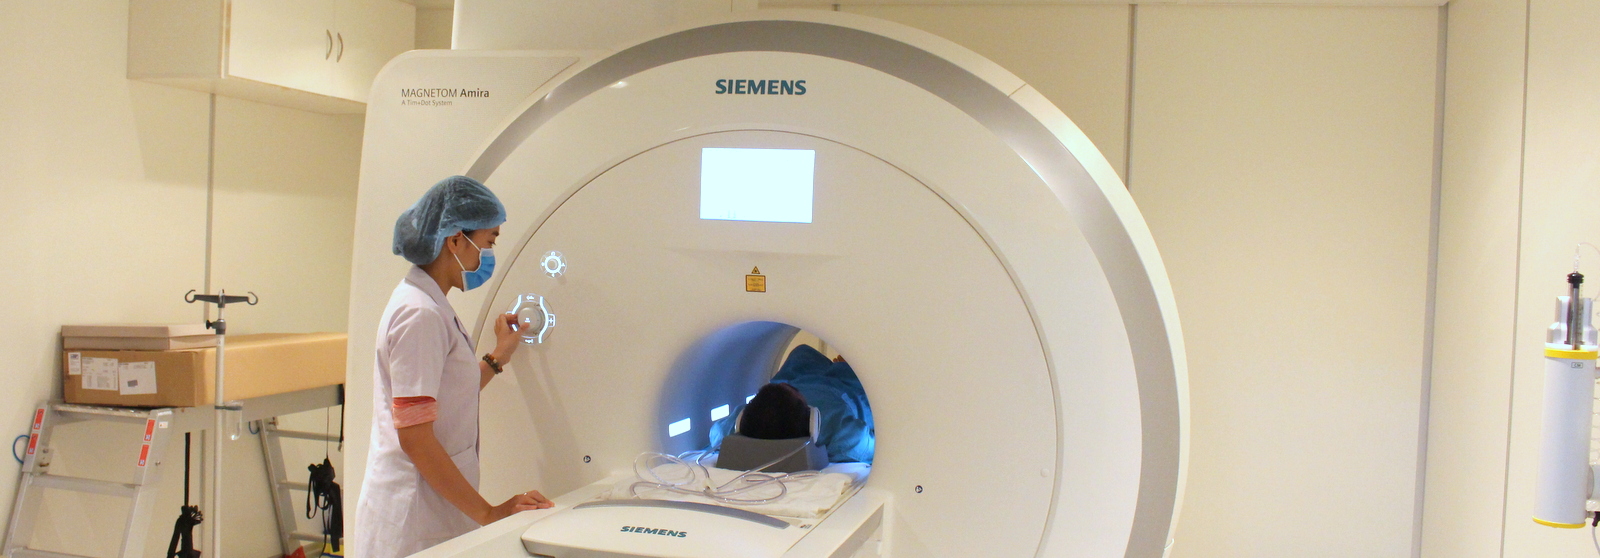 Máy chụp MRI hiện đại